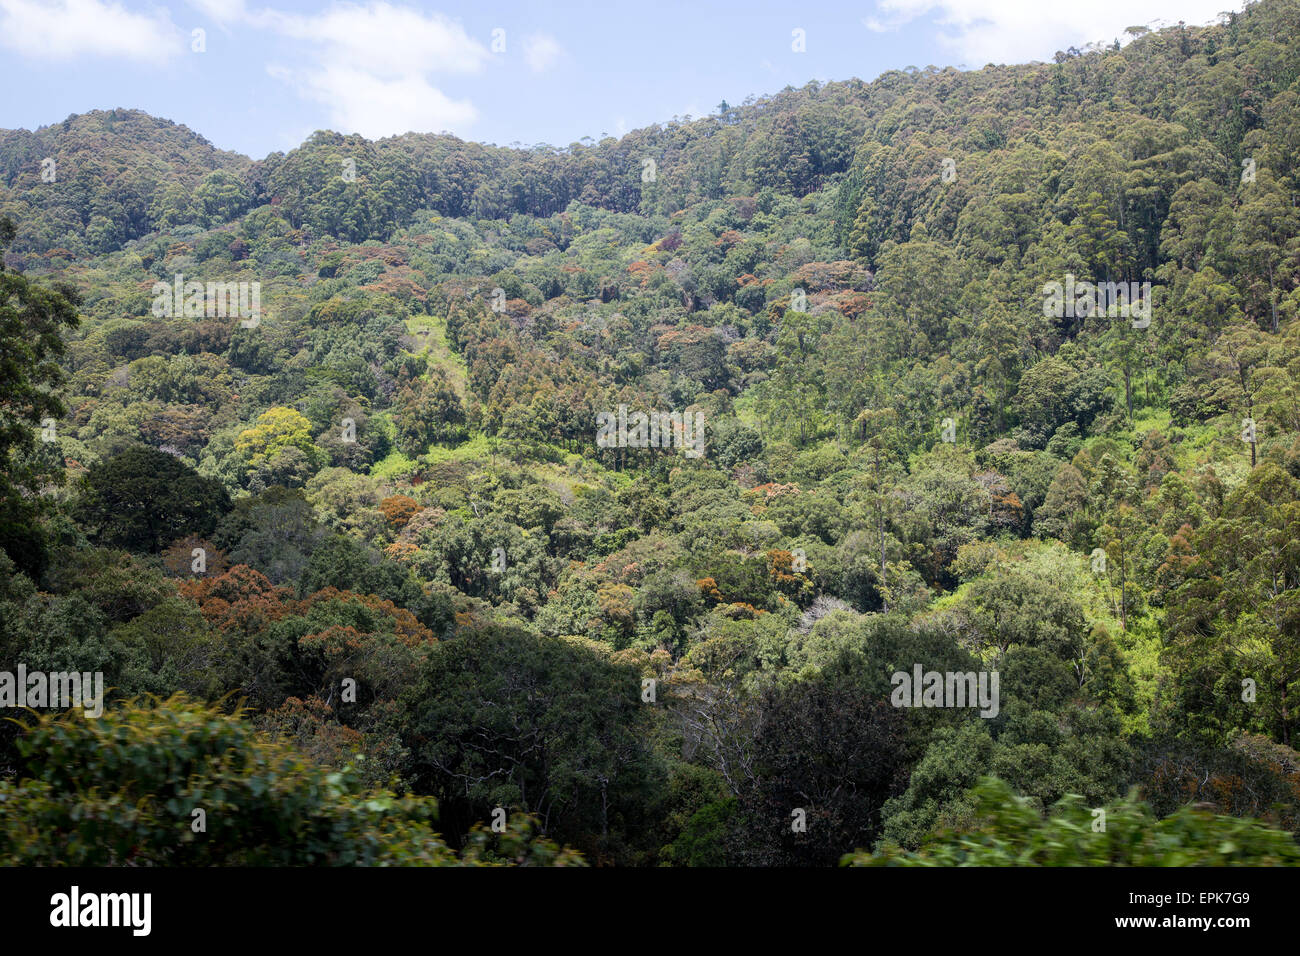 Montagnes boisées avec rainforest original dans les hautes terres du Sri Lanka, en Asie Banque D'Images